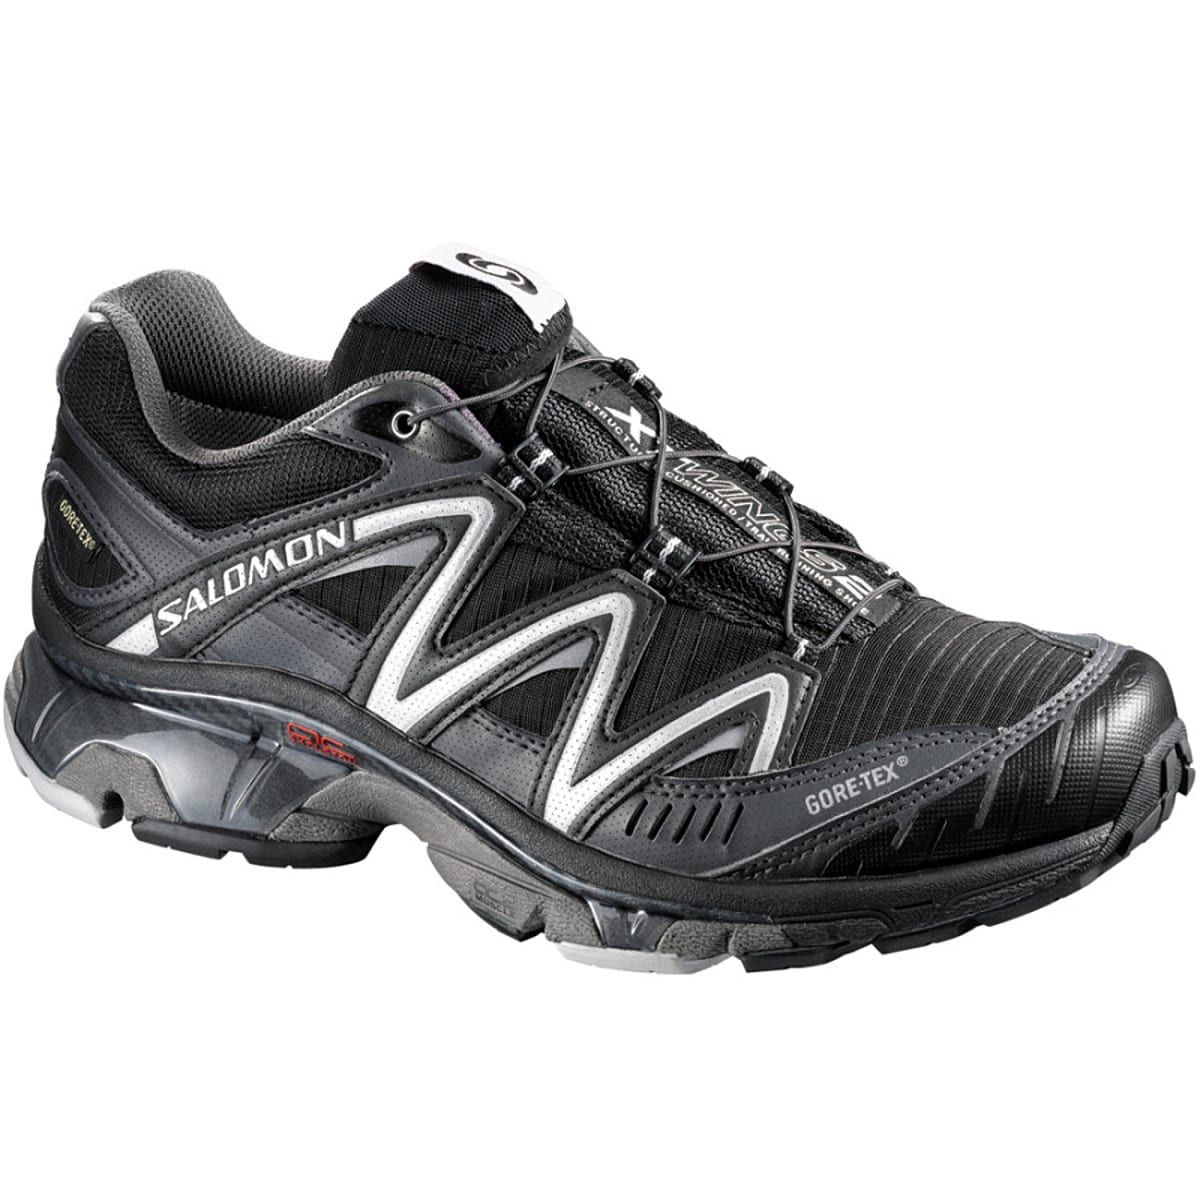 Salomon XT Wings 2 GTX Trail Running Shoe - Men's - Footwear